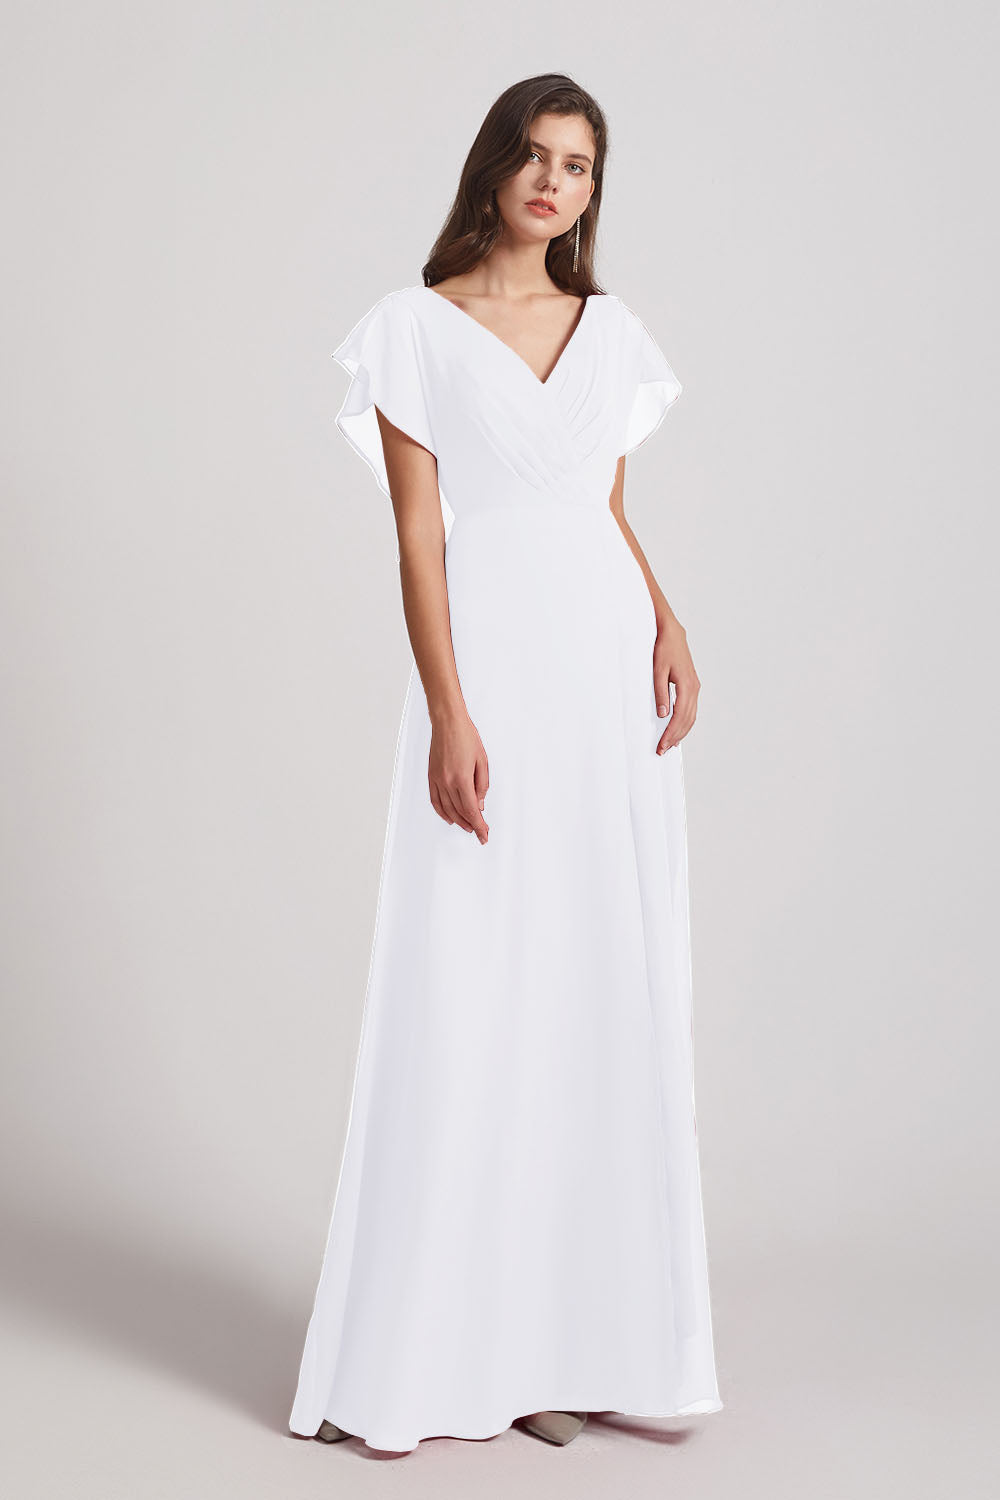 Alfa Bridal White V-Neck Chiffon Long Backless Bridesmaid Dresses with Side Slit (AF0071)